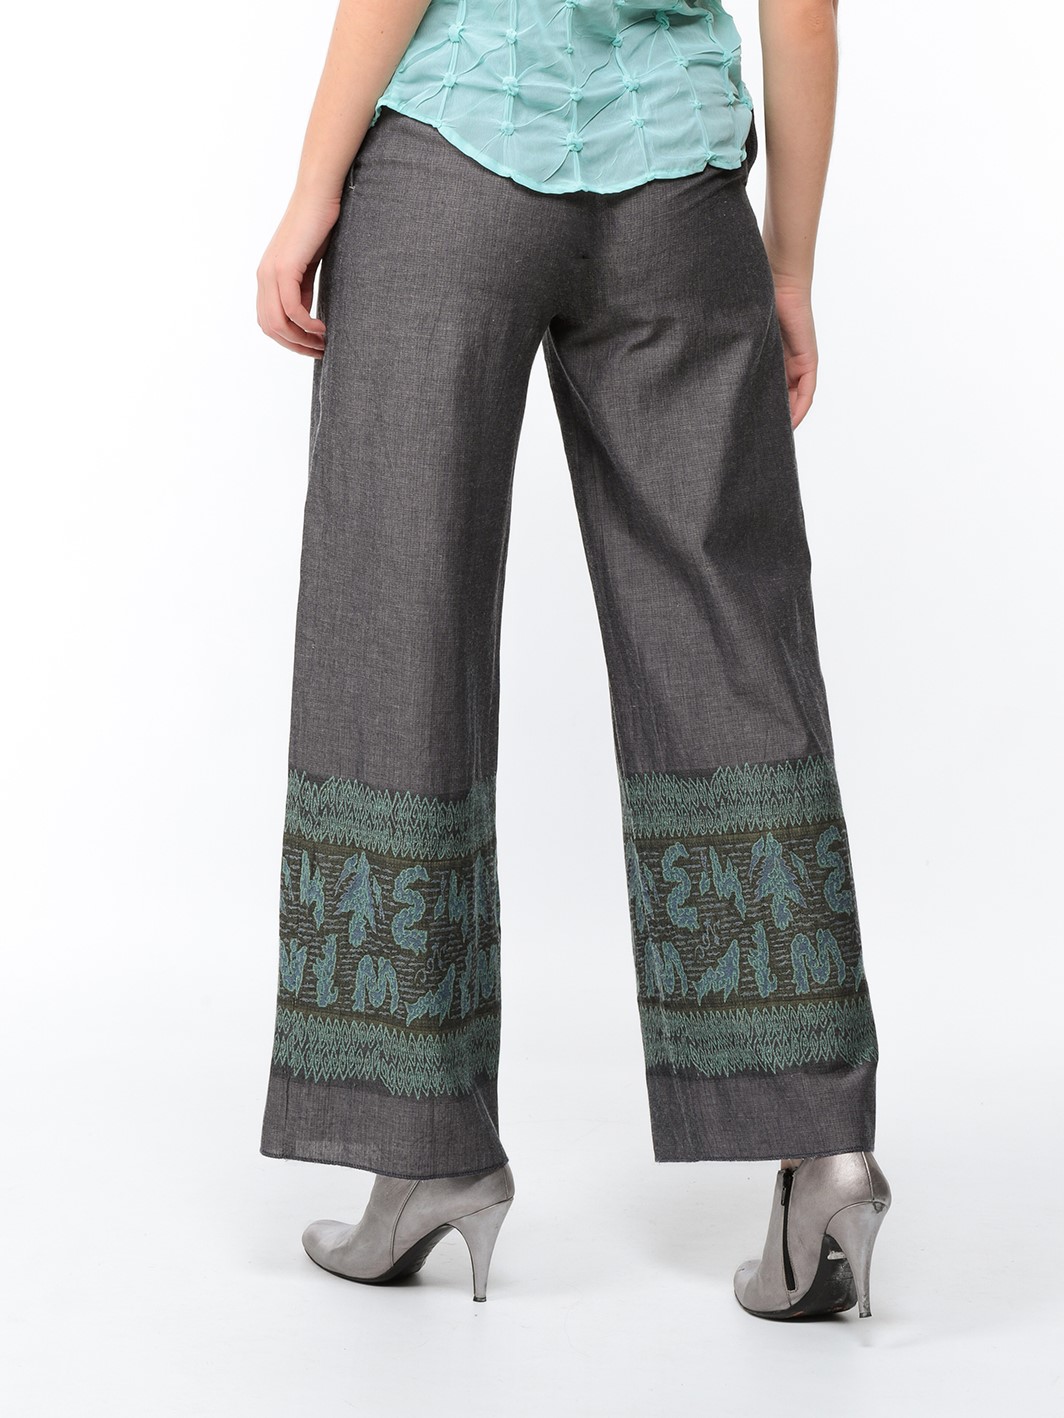 Pantalon large en toile gris acier avec bas brodé turquoise et kaki